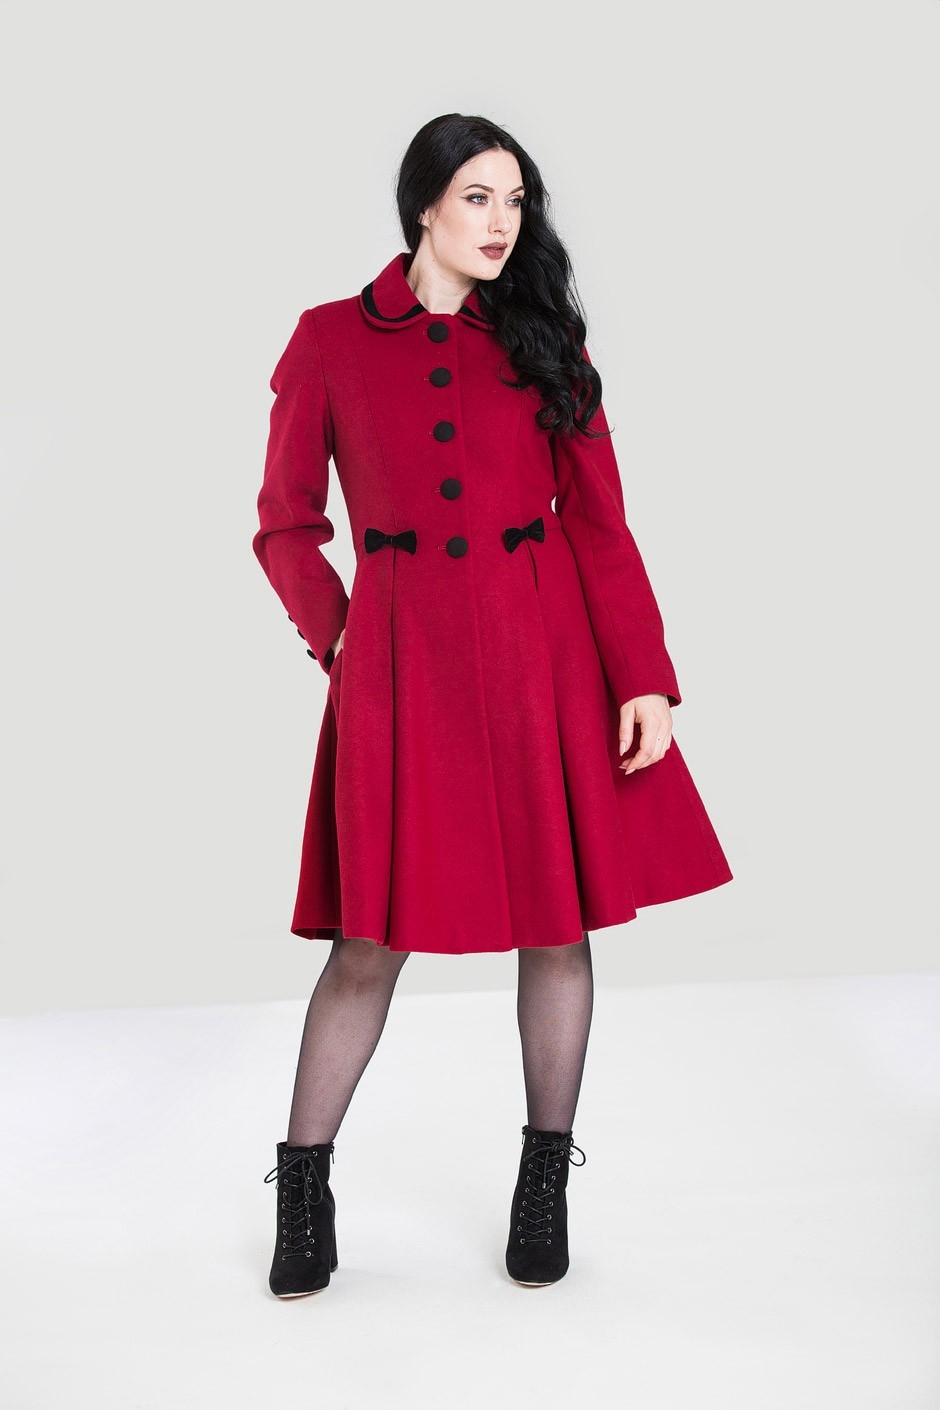 Konsekvent Tvunget hovedpine Olivia coat, rød: Lækker varm og feminin frakke sort med små sløjfer -  fantastisk frakke, vi elsker, når der er gjort noget ud af det.